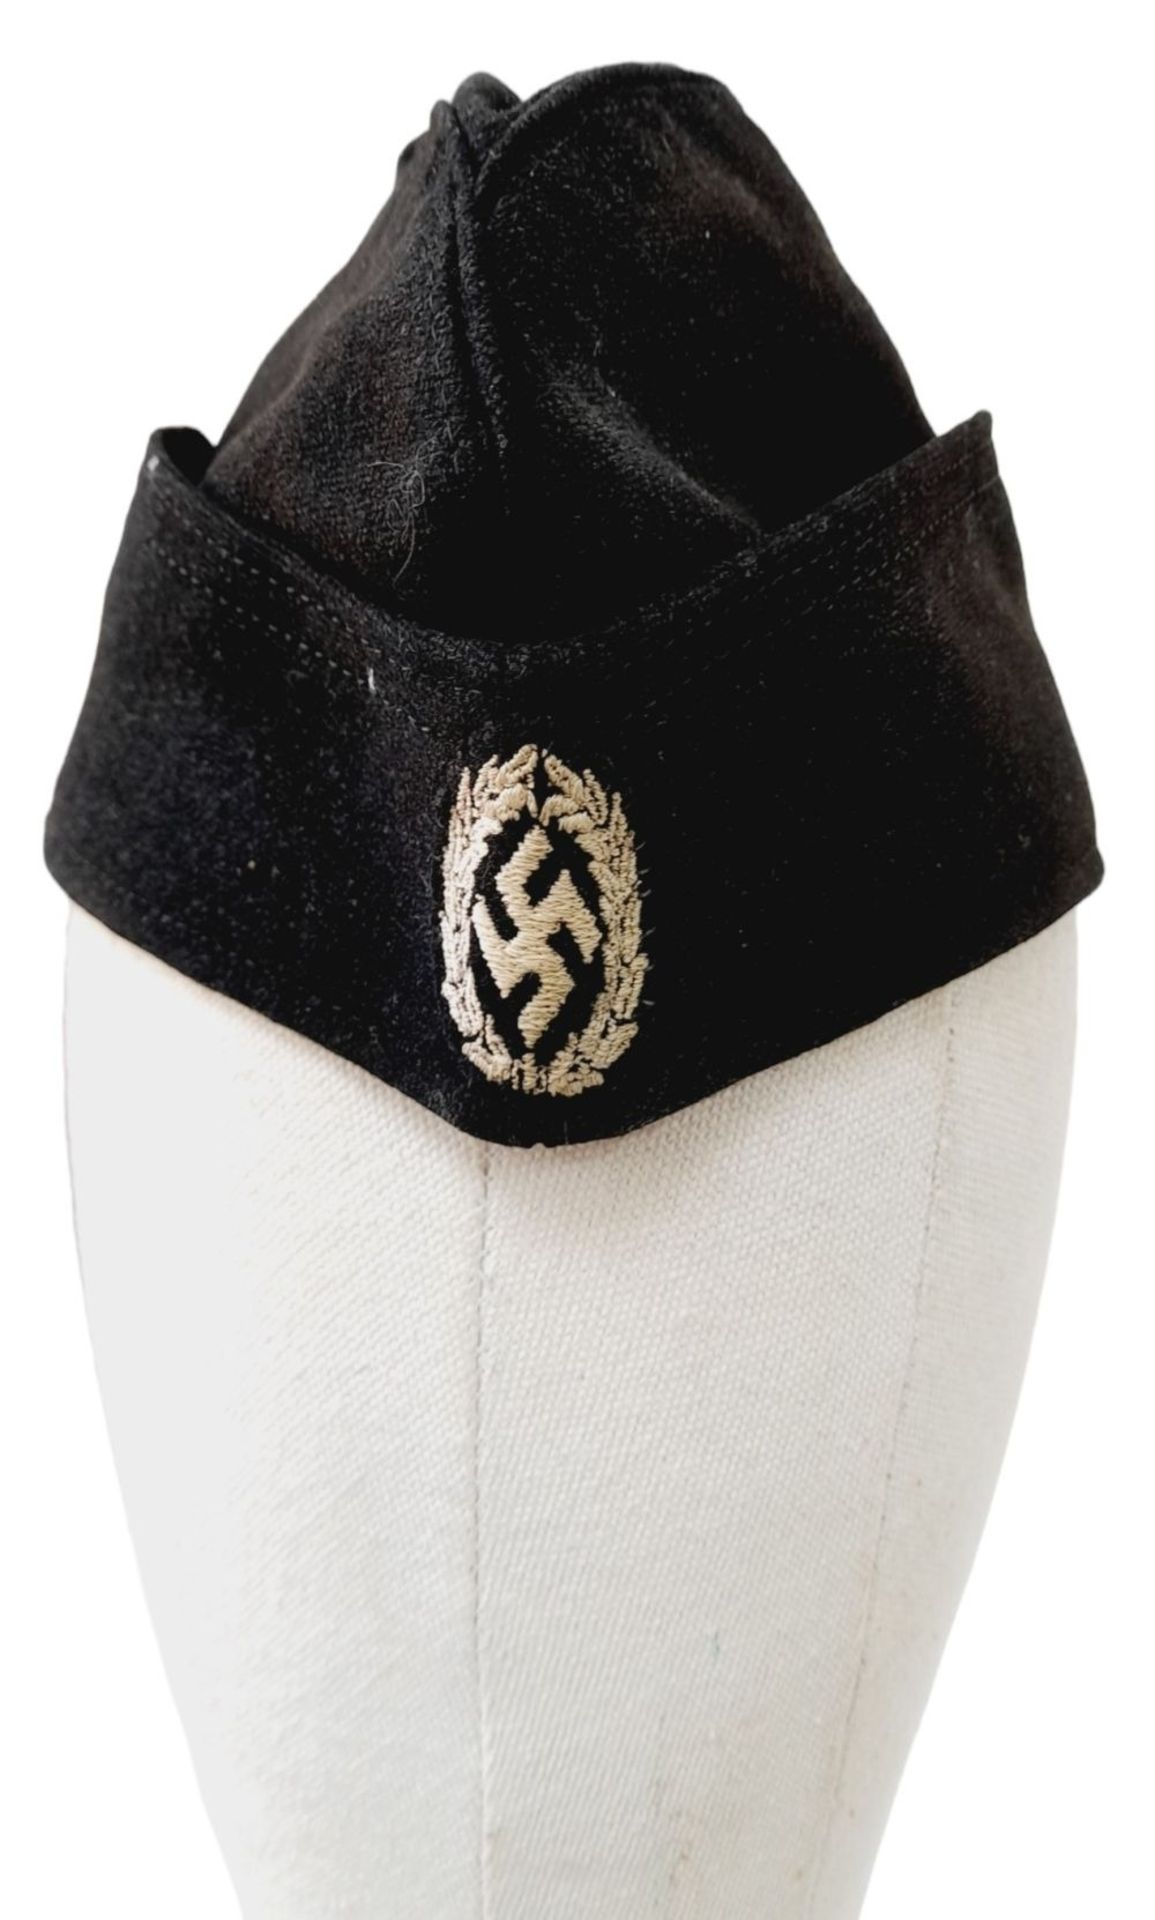 3rd Reich Schutzmannschaft Side Cap. Worn by the notorious Ukrainian Auxiliary Police.